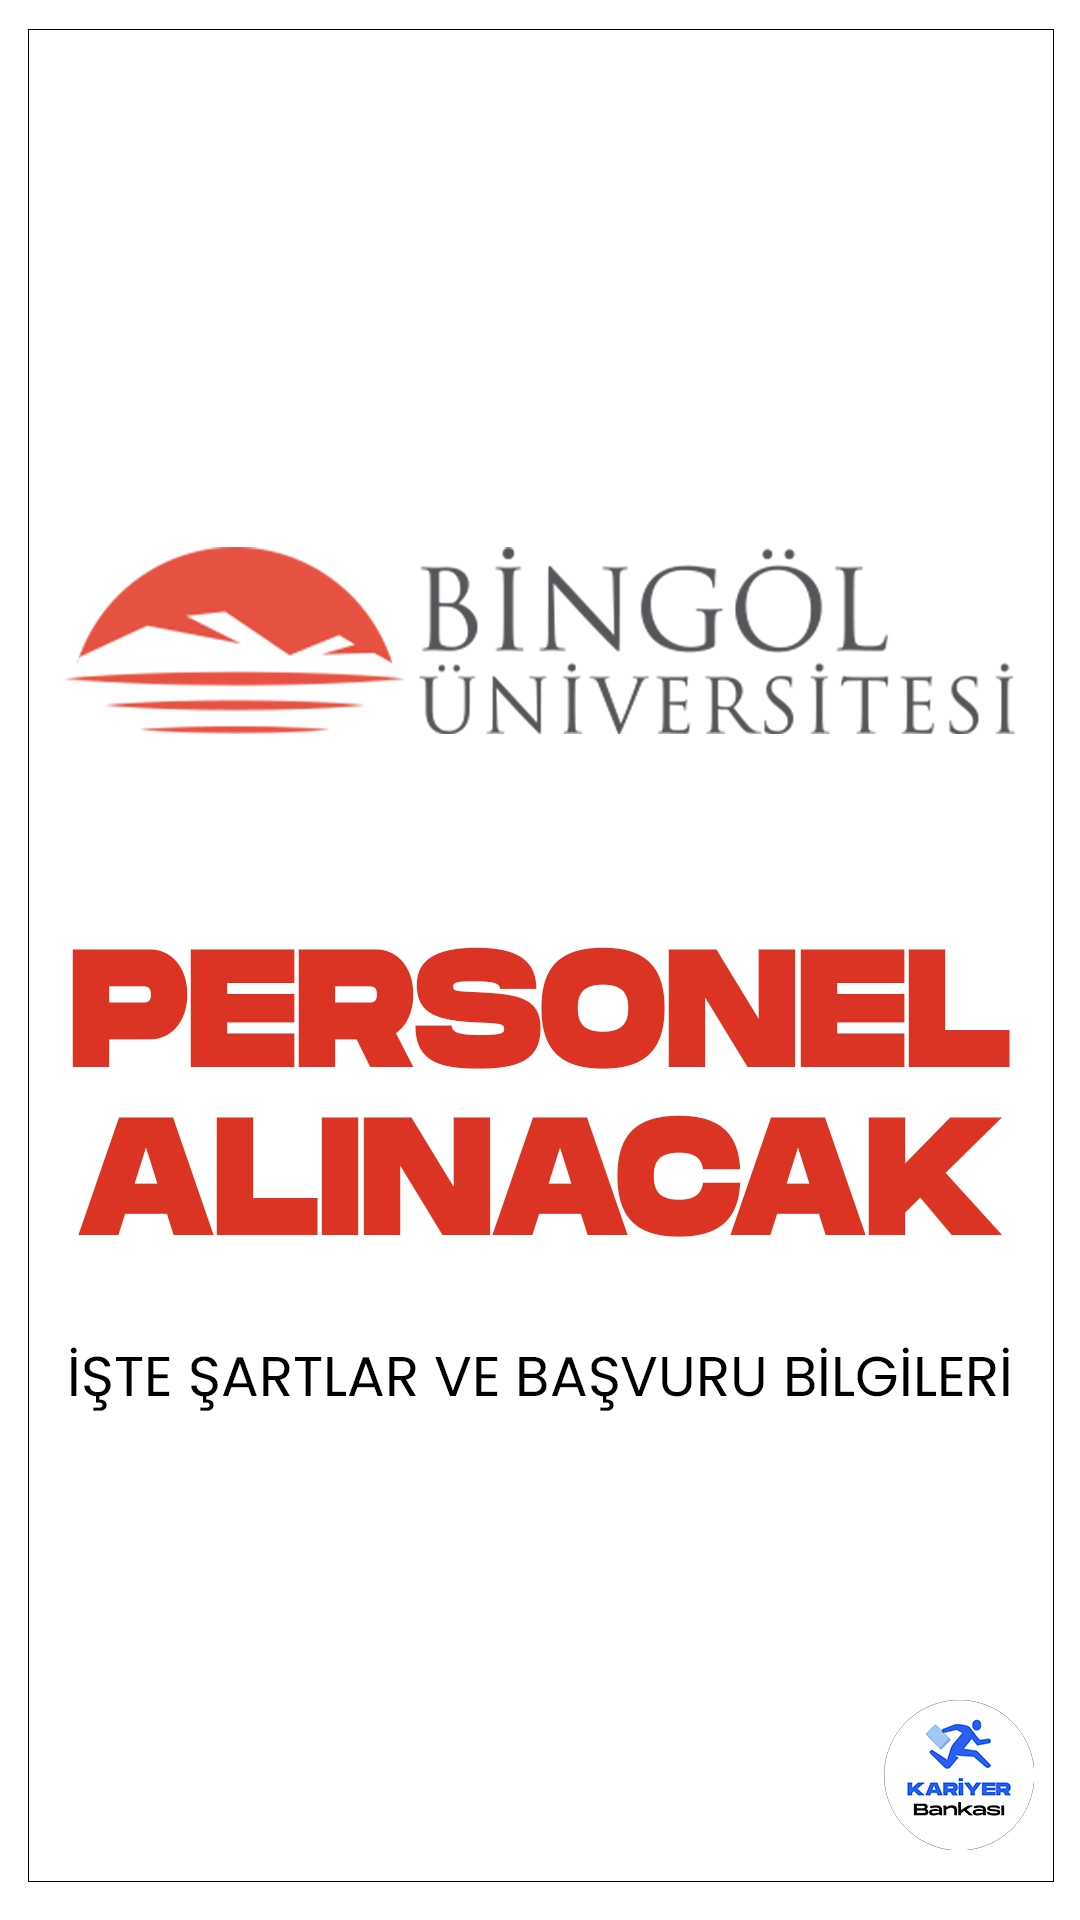 Bingöl Üniversitesi personel alımı başvuru işlemleri devam ederken, Kariyerbankasi.net olarak başvuru şartları ve başvuru bilgilerine dair detaylara bu haberimizde yer verdik.